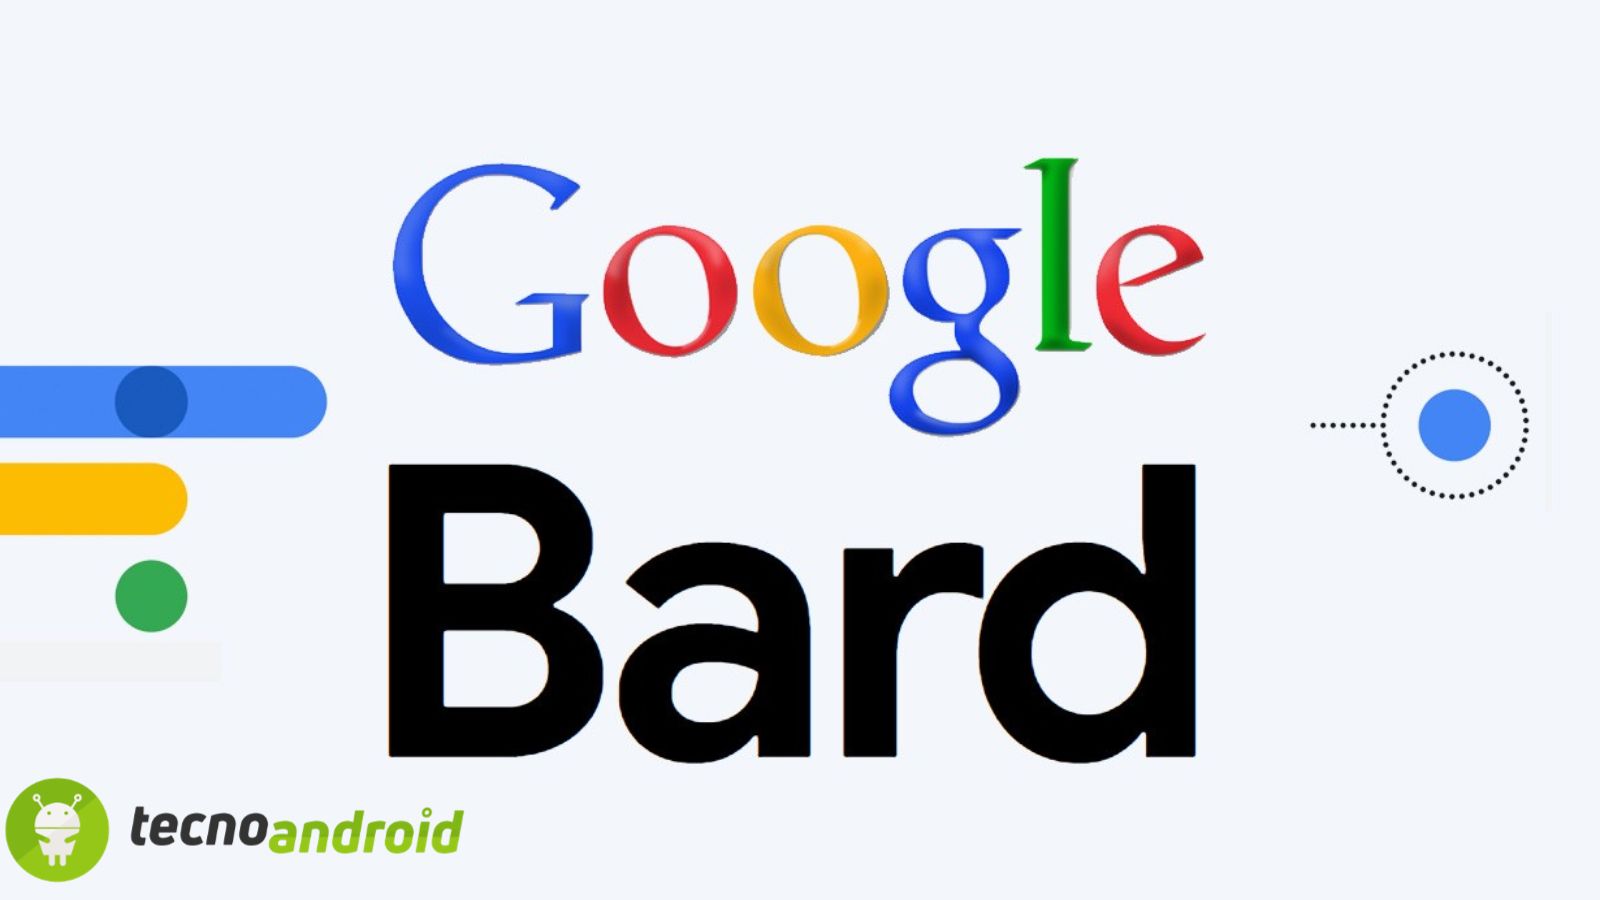 Bard: le innovazioni dell’AI di Google